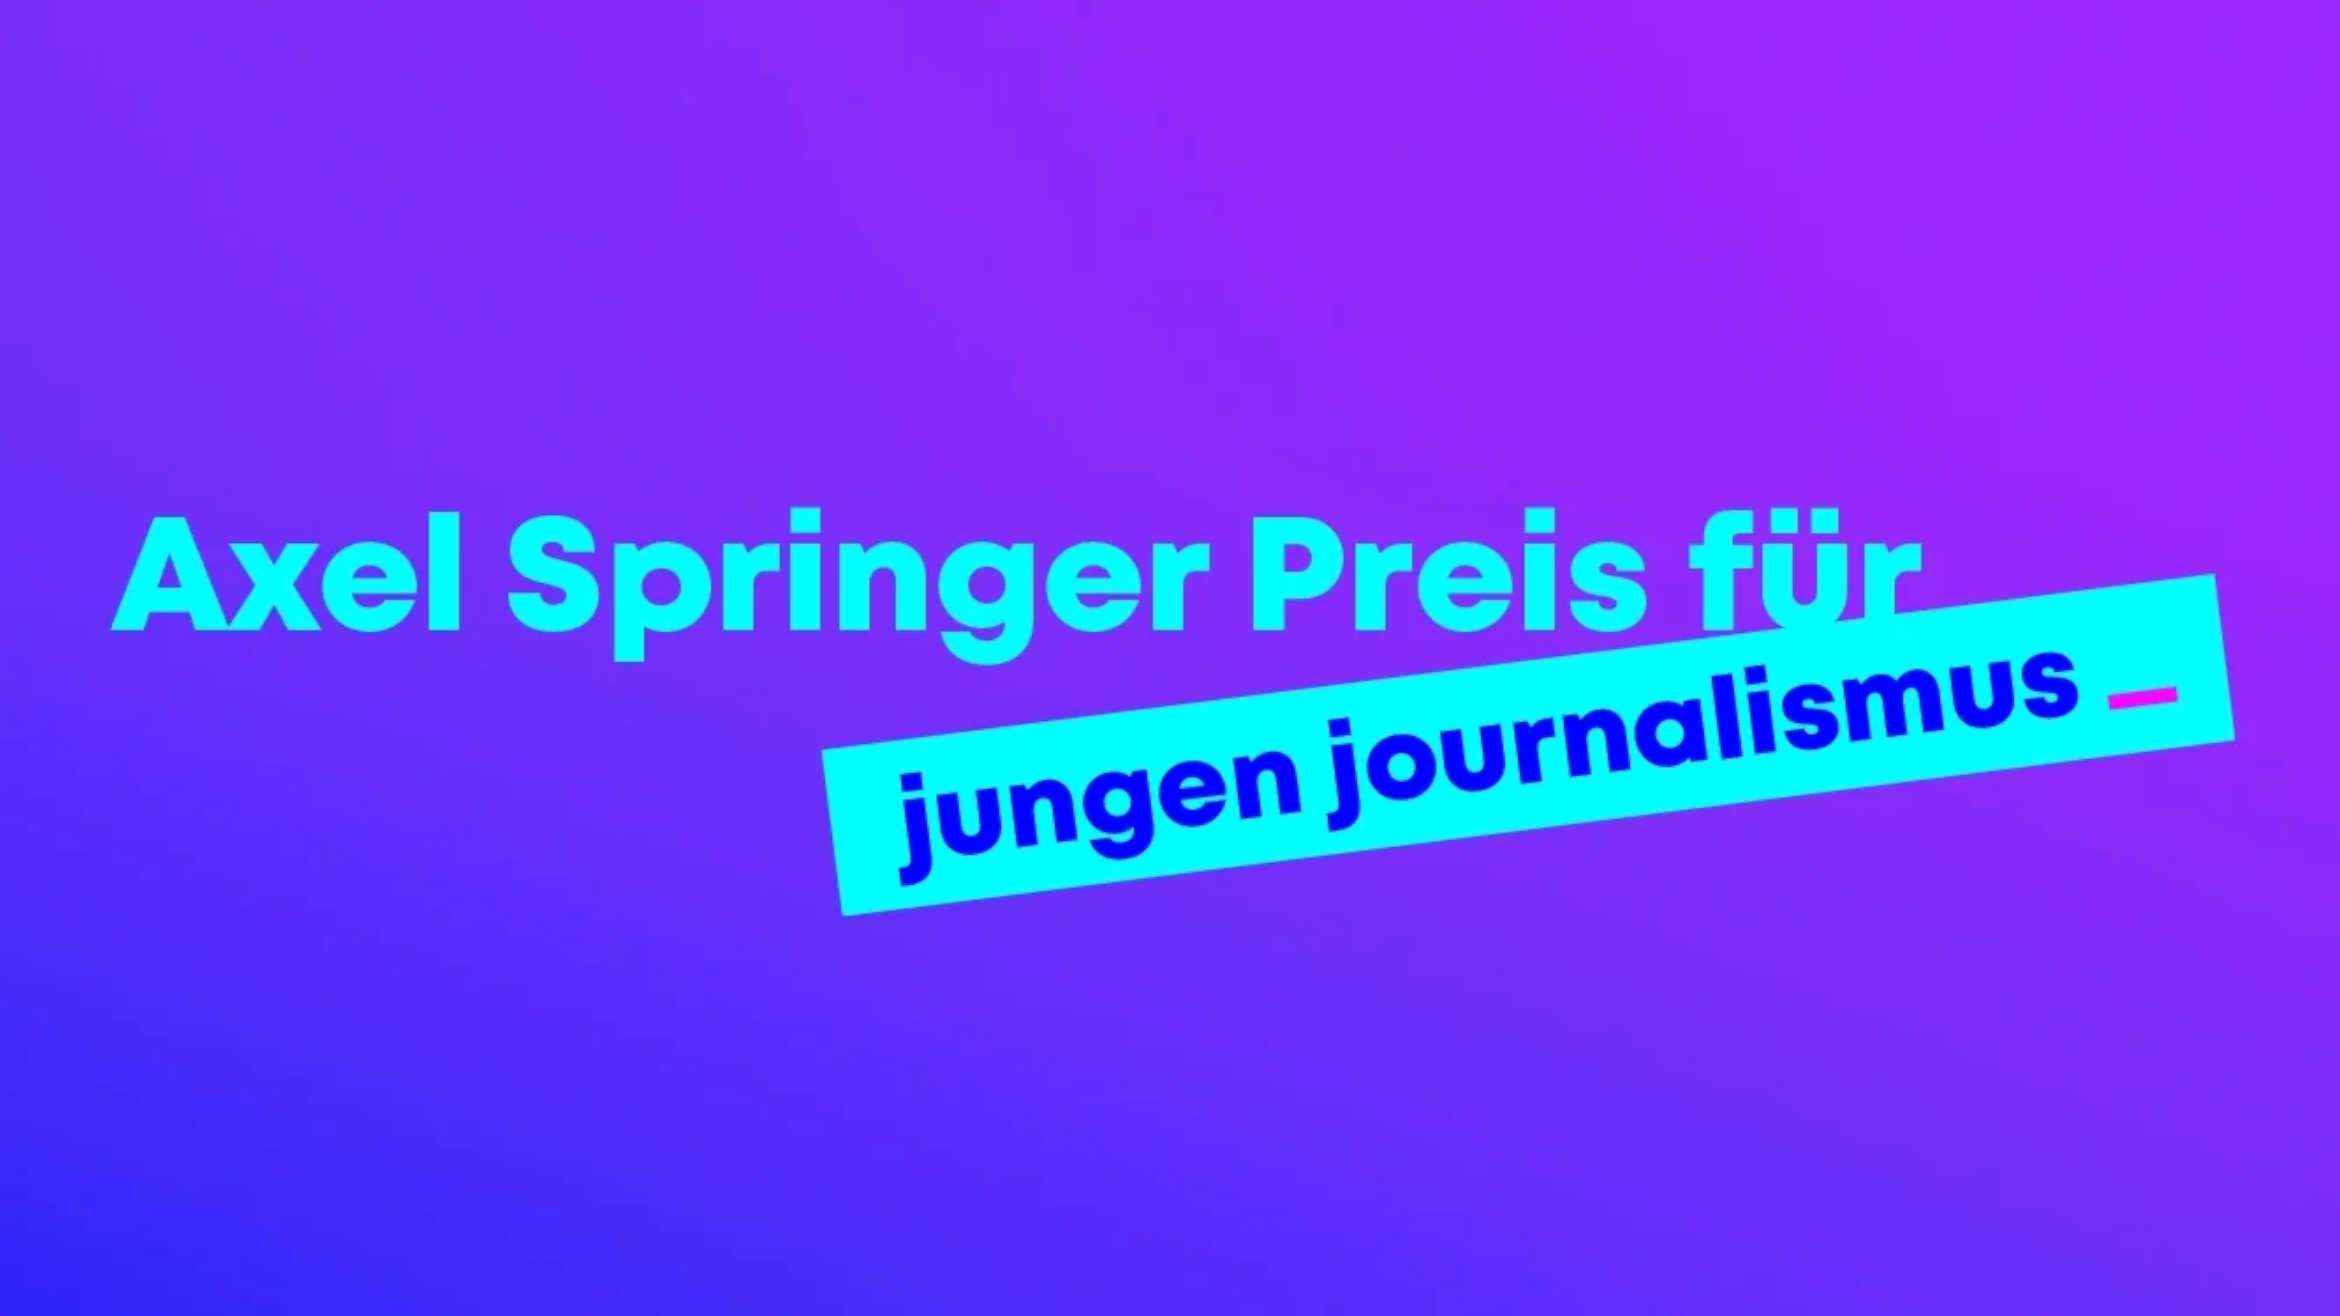 Der Axel Springer Preis wird von der Springer-Akademie an junge Journalisten in den Kategorien Print, Fernsehen, Hörfunk und Internet vergeben -